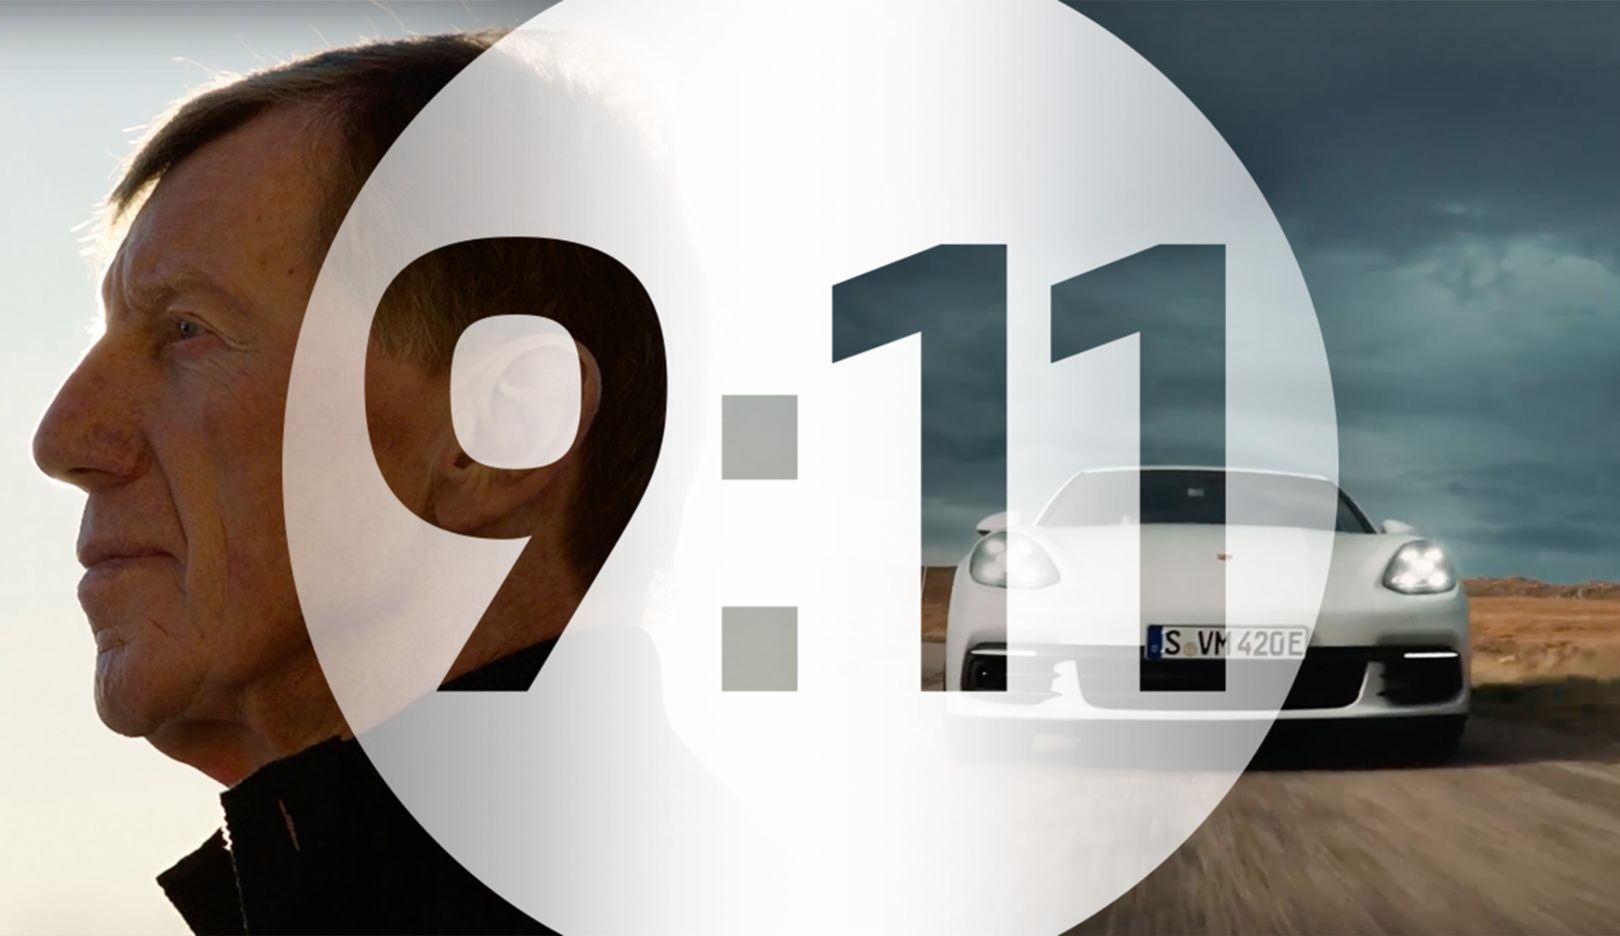 9:11 Magazine: Courage